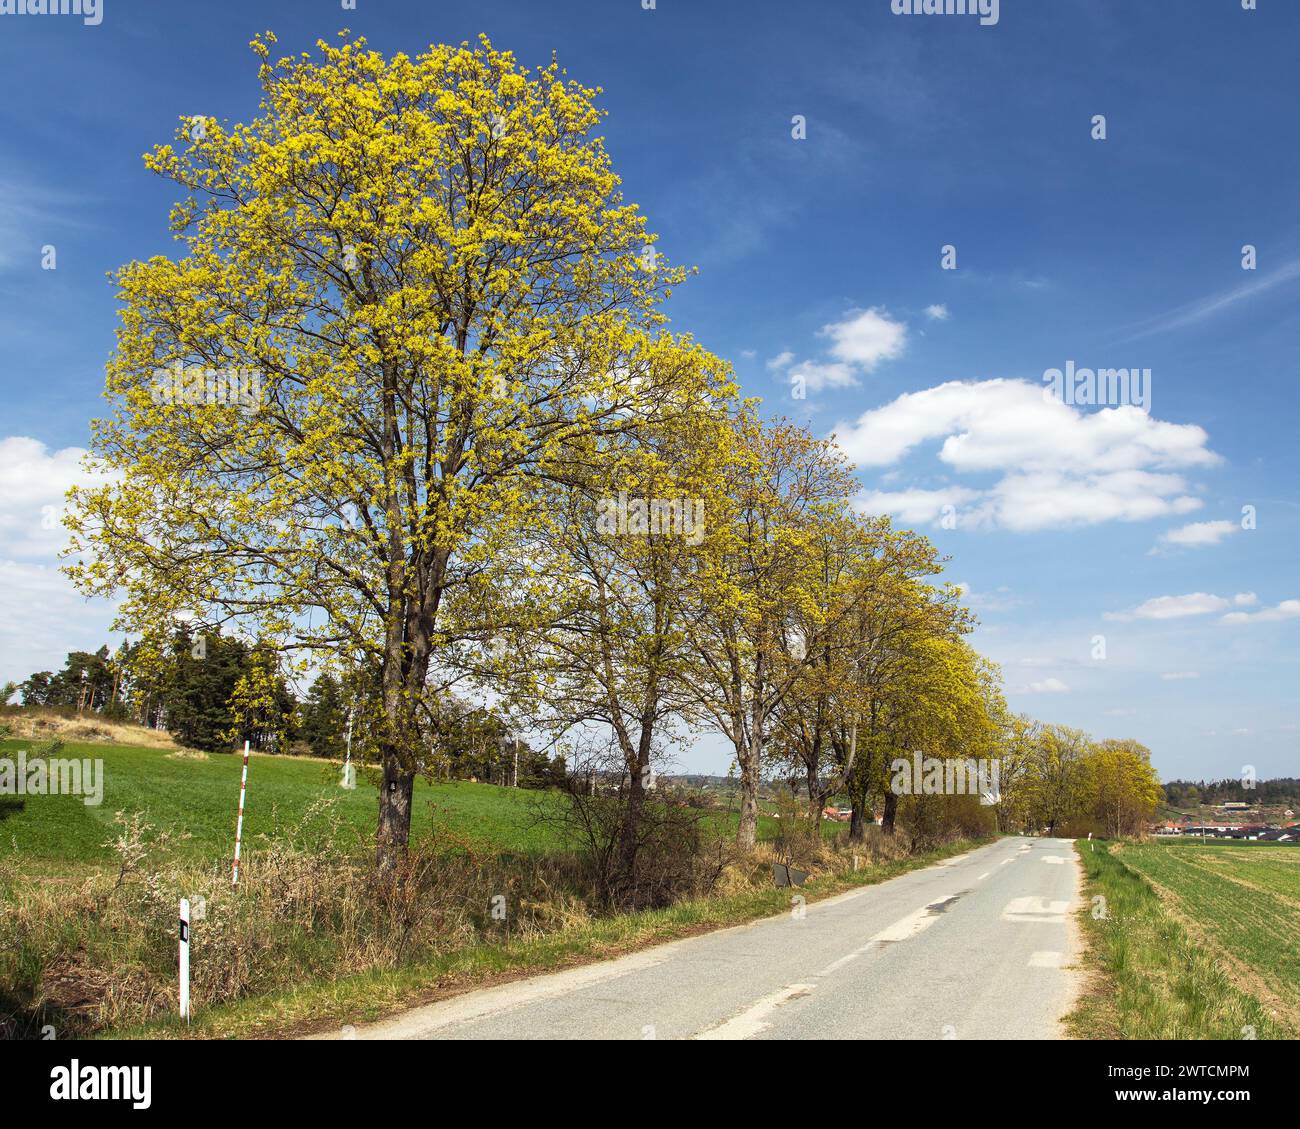 Strada con viuzze di alberi d'acero in fiore e un bel cielo, paesaggio primaverile Foto Stock